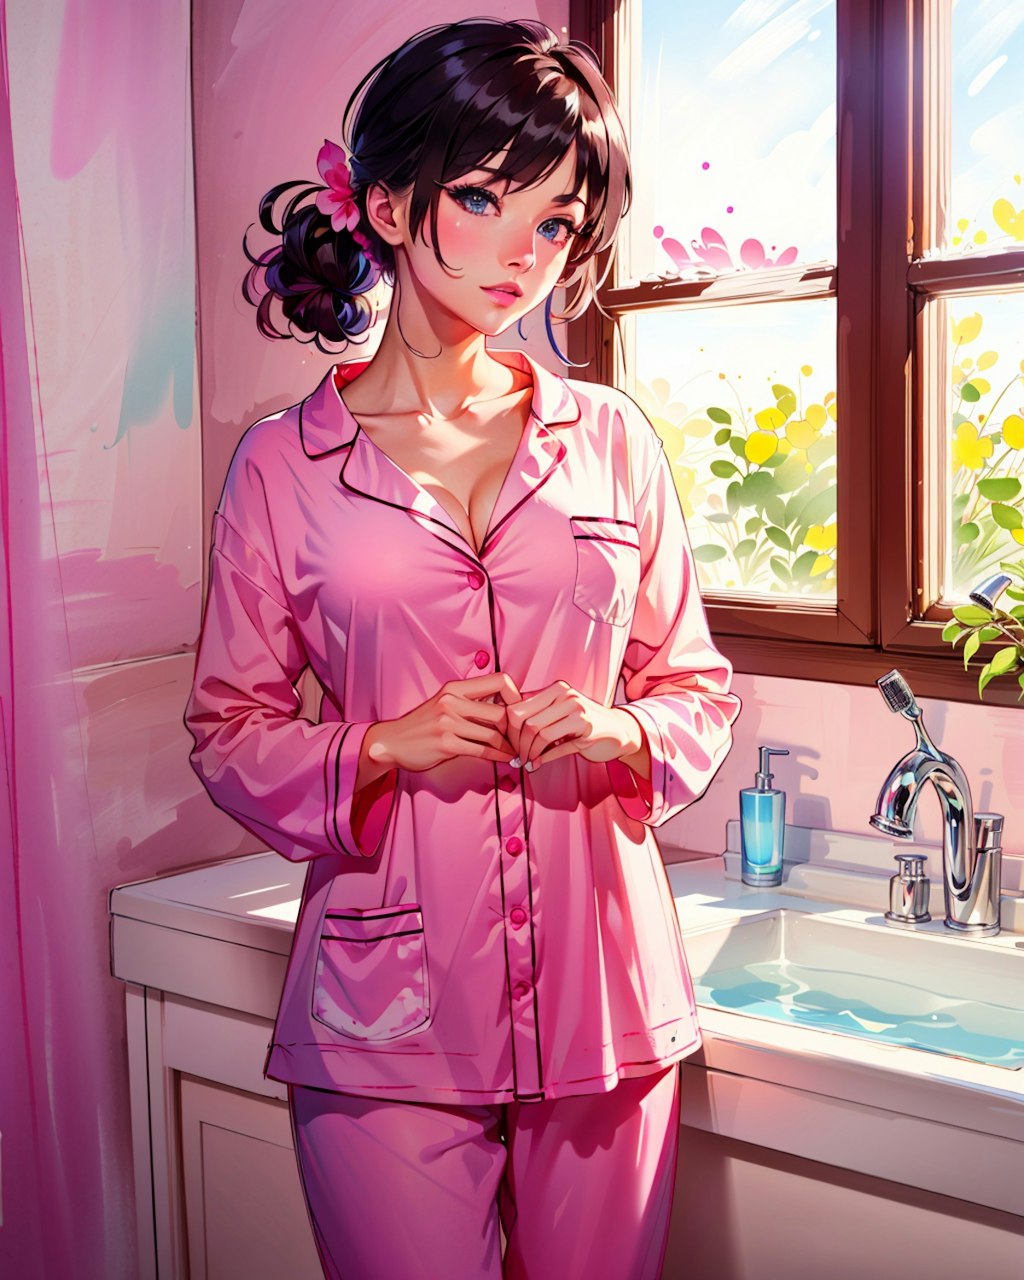 朝起きて出かける準備をするのピンクのパジャマ